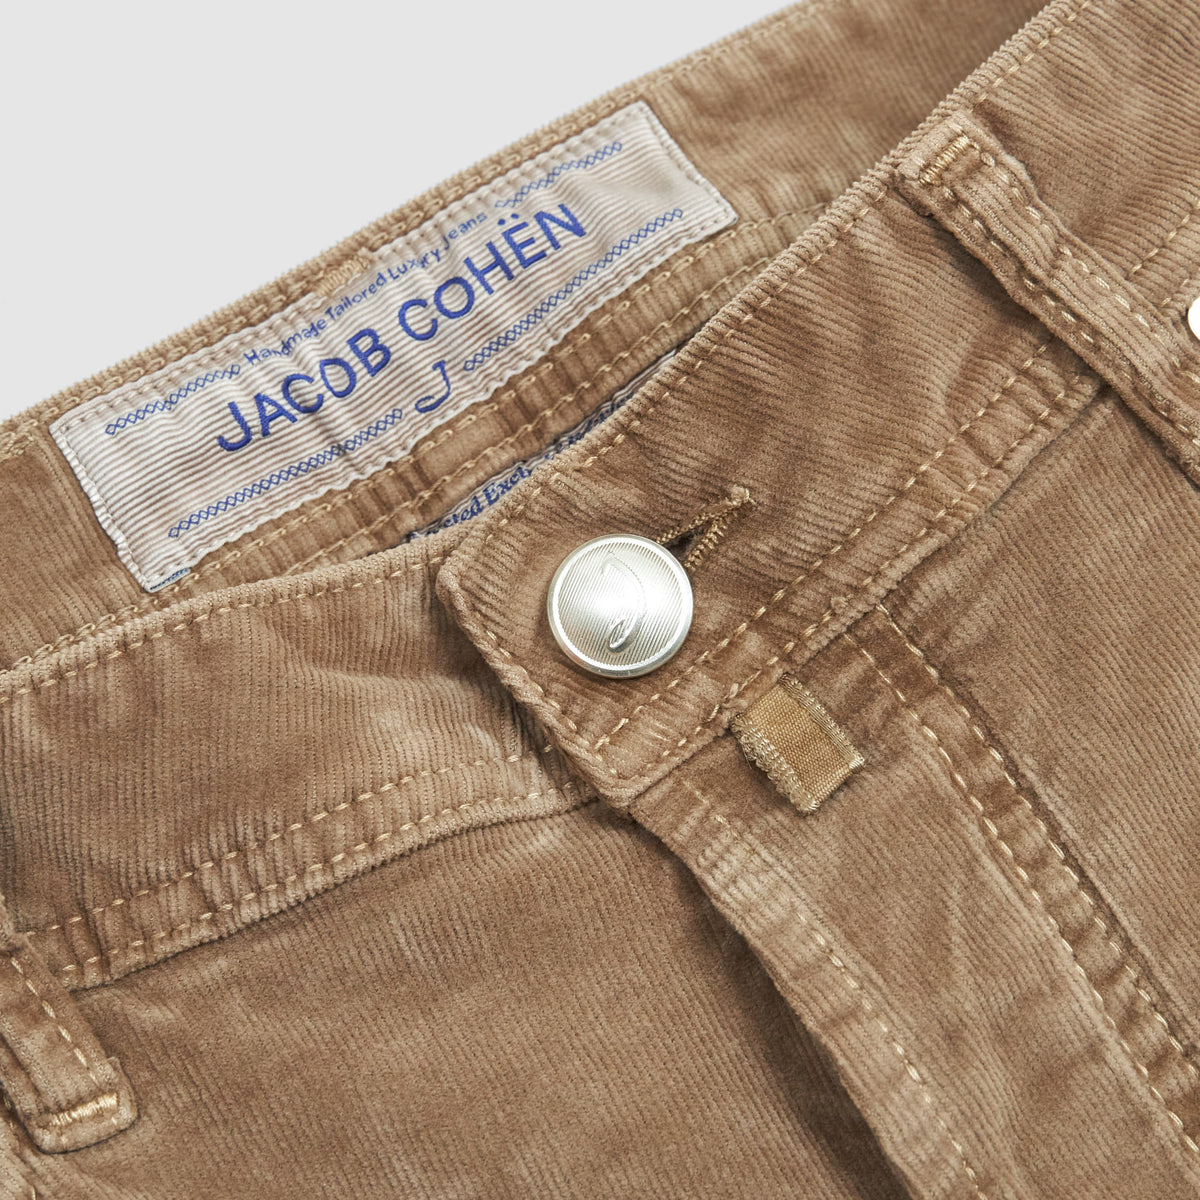 Jacob Cohen Luxury 5 Pocket Corduroy Pants